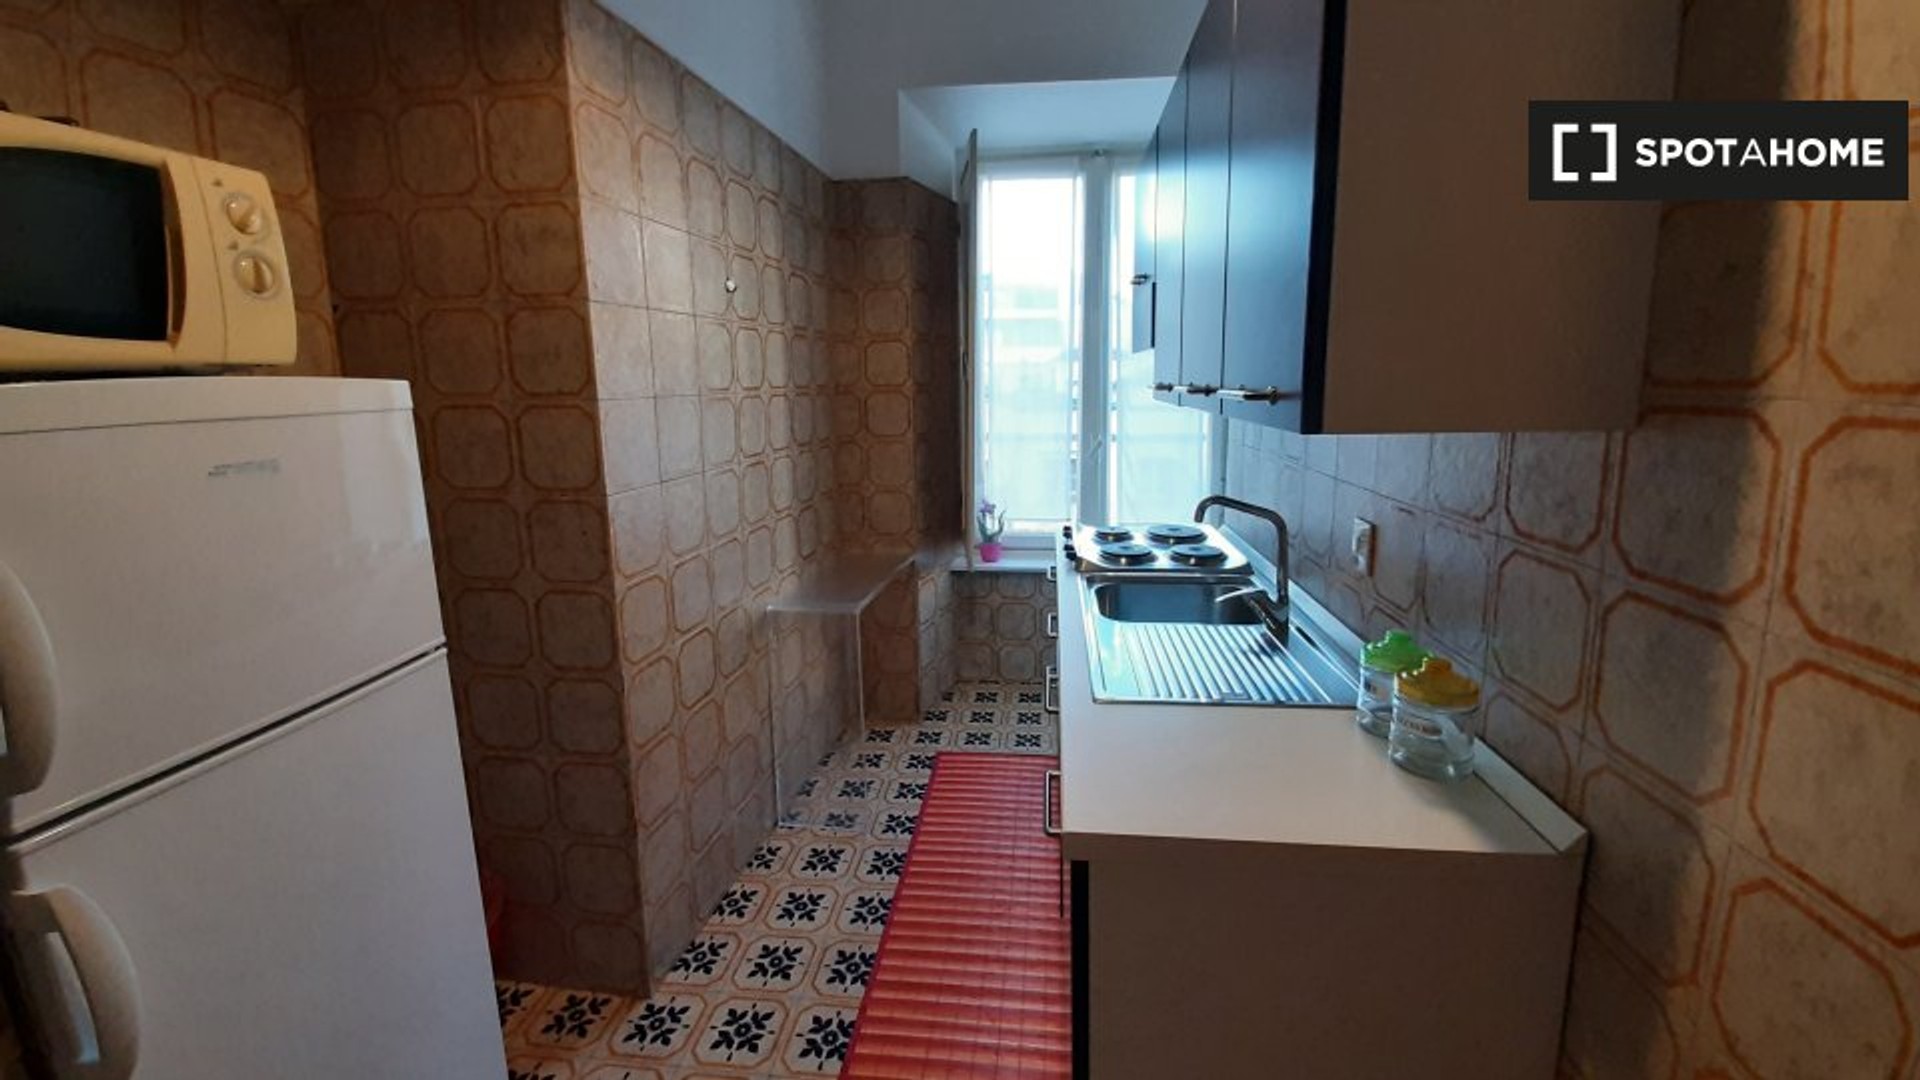 Apartamento moderno e brilhante em Turim